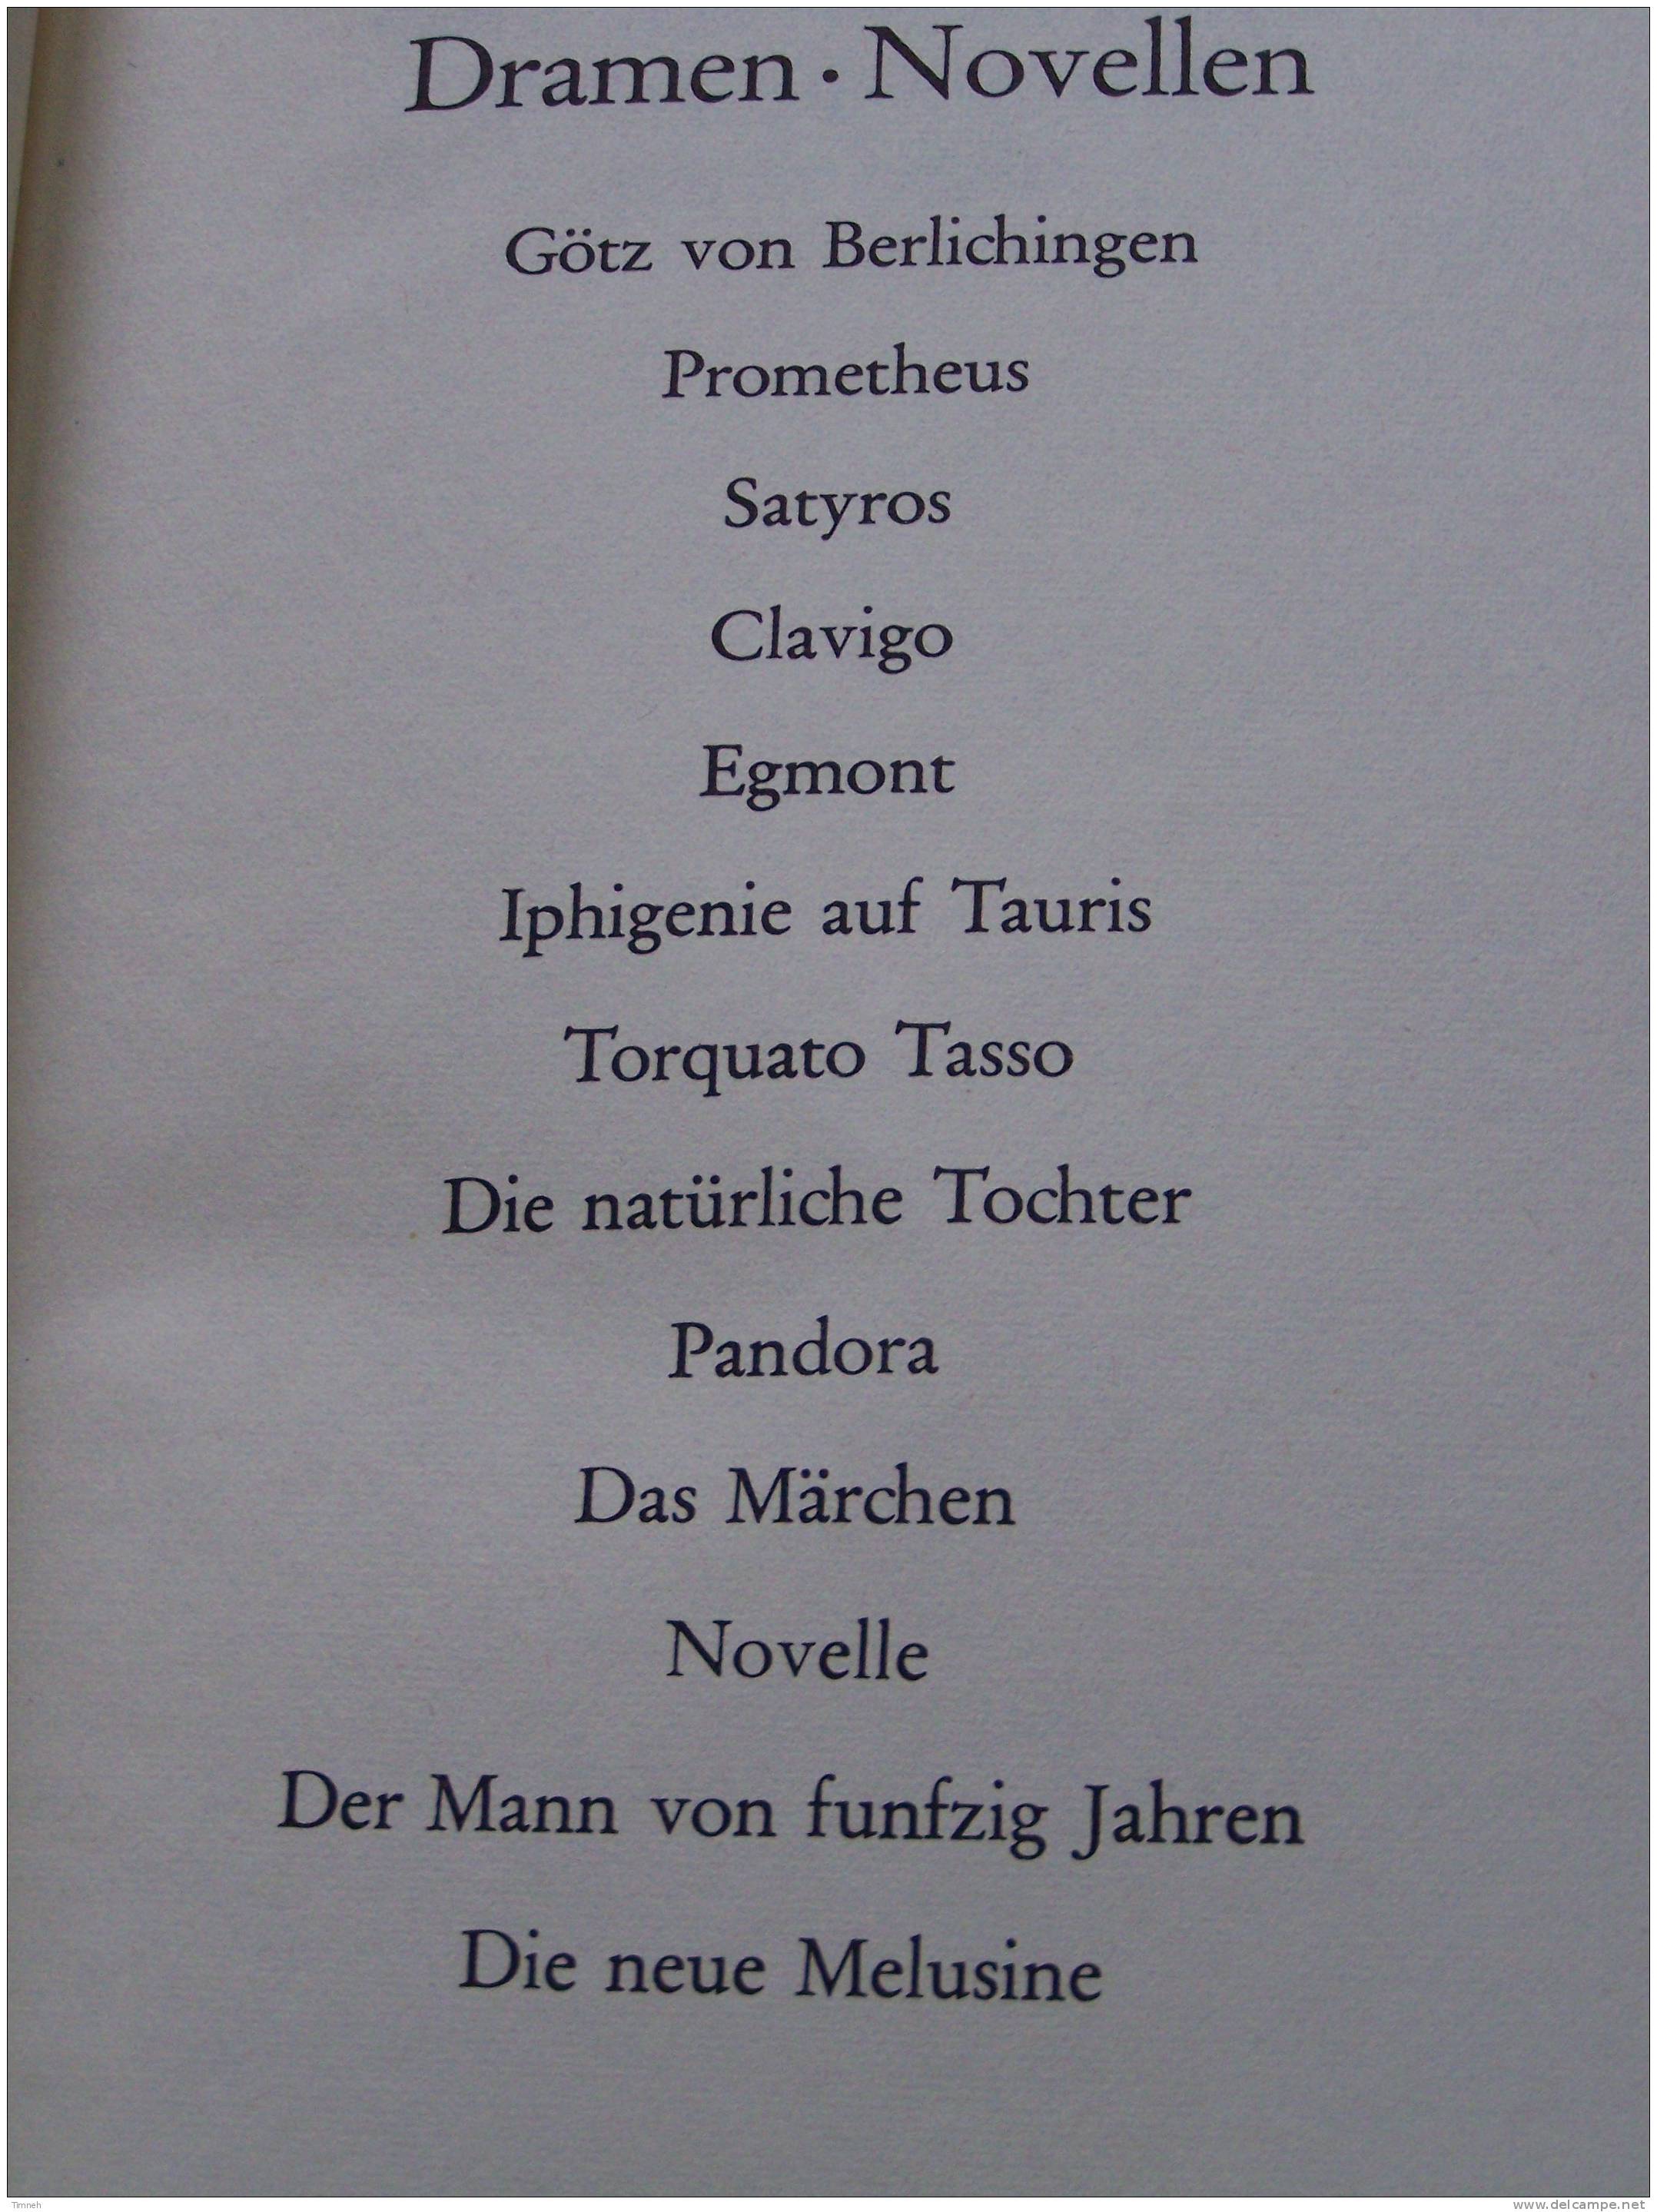 GOETHE WERKE - 6 BANDEN TOMES - Insel Verlag 1965 - WERTHER MEISTER FAUST GEDICHTE DICHTUNG WARHEIT - Internationale Auteurs